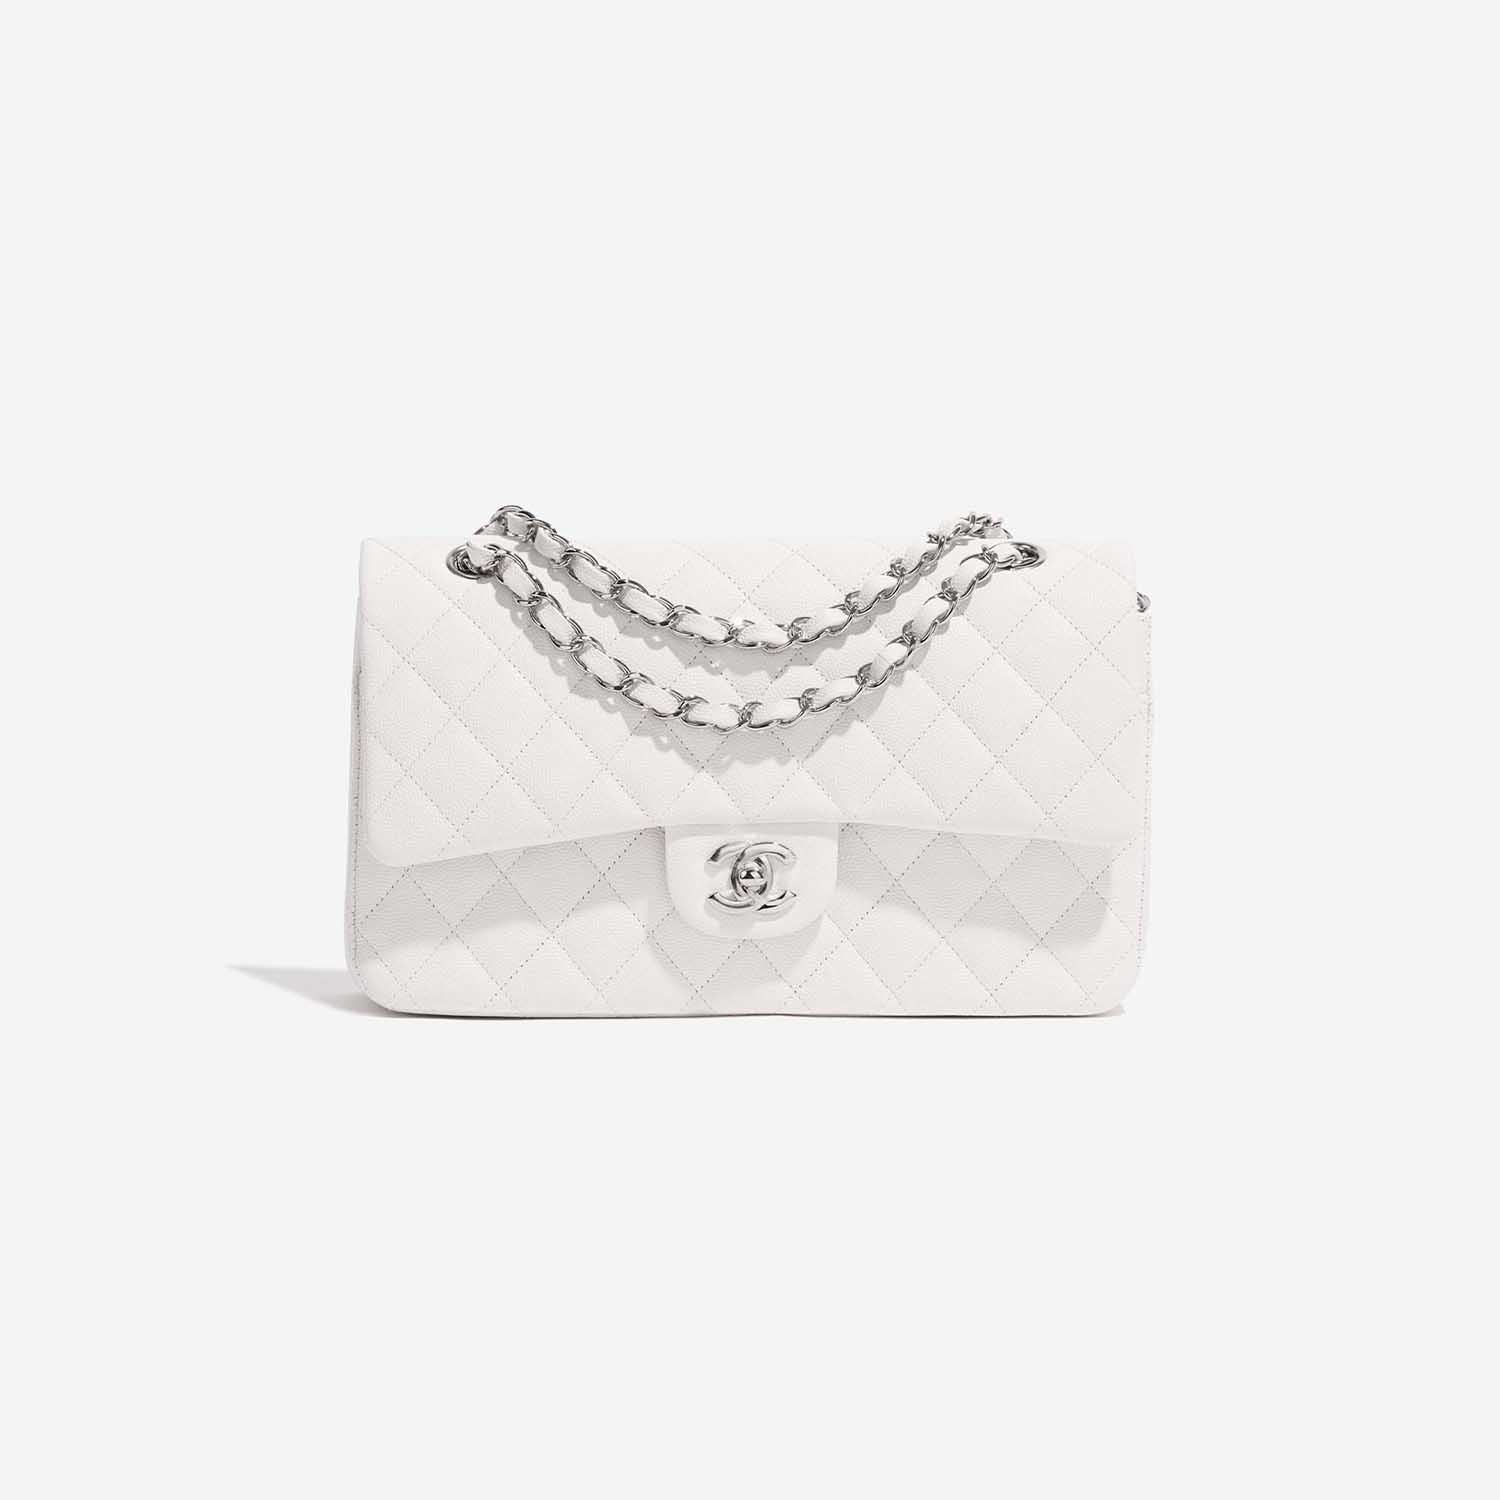 Chanel Timeless Medium White Front | Verkaufen Sie Ihre Designer-Tasche auf Saclab.com